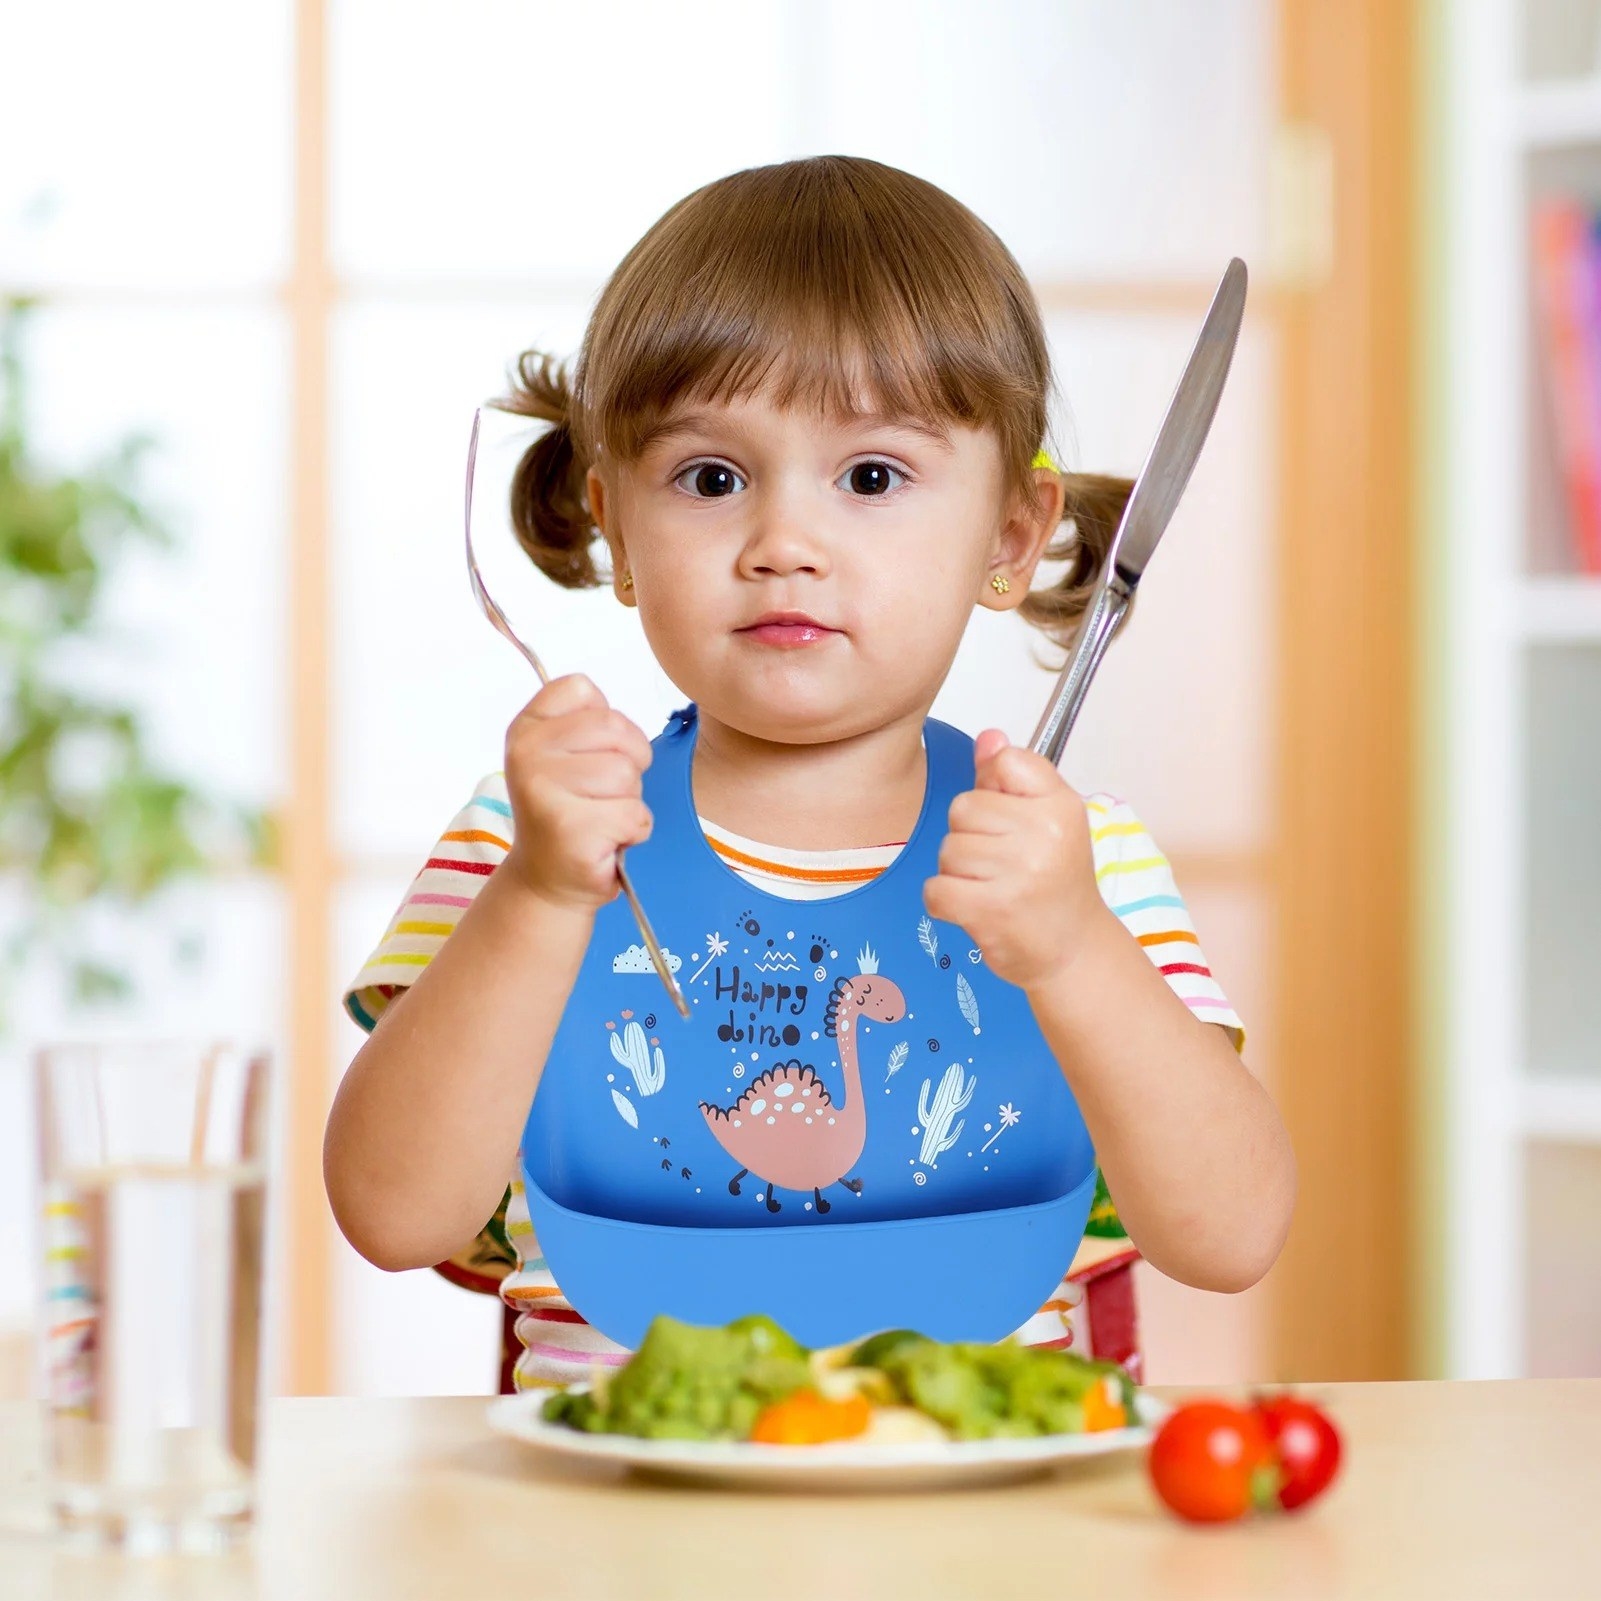 Toddler eats while wearing bib